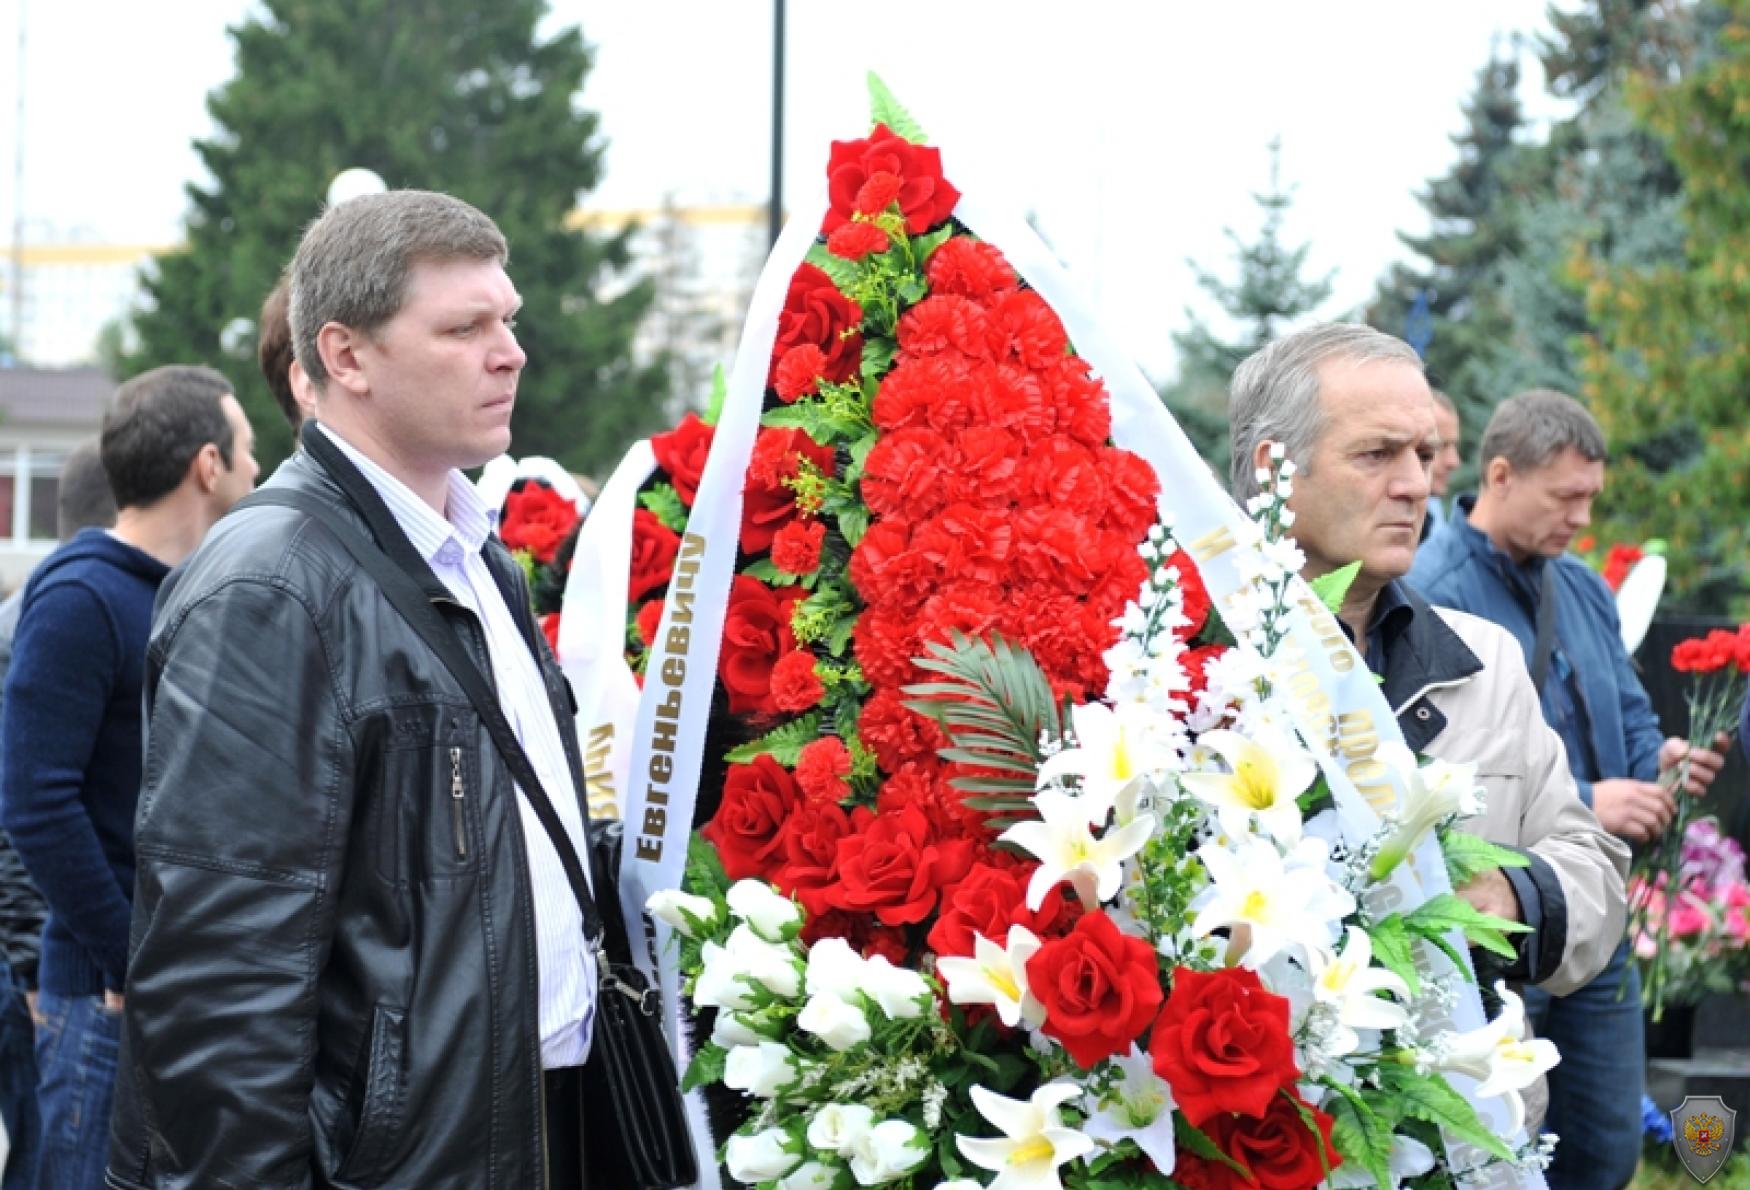 Мероприятия посвящённые дню памяти жертв терроризма. Москва. 3 сентября 2015 года